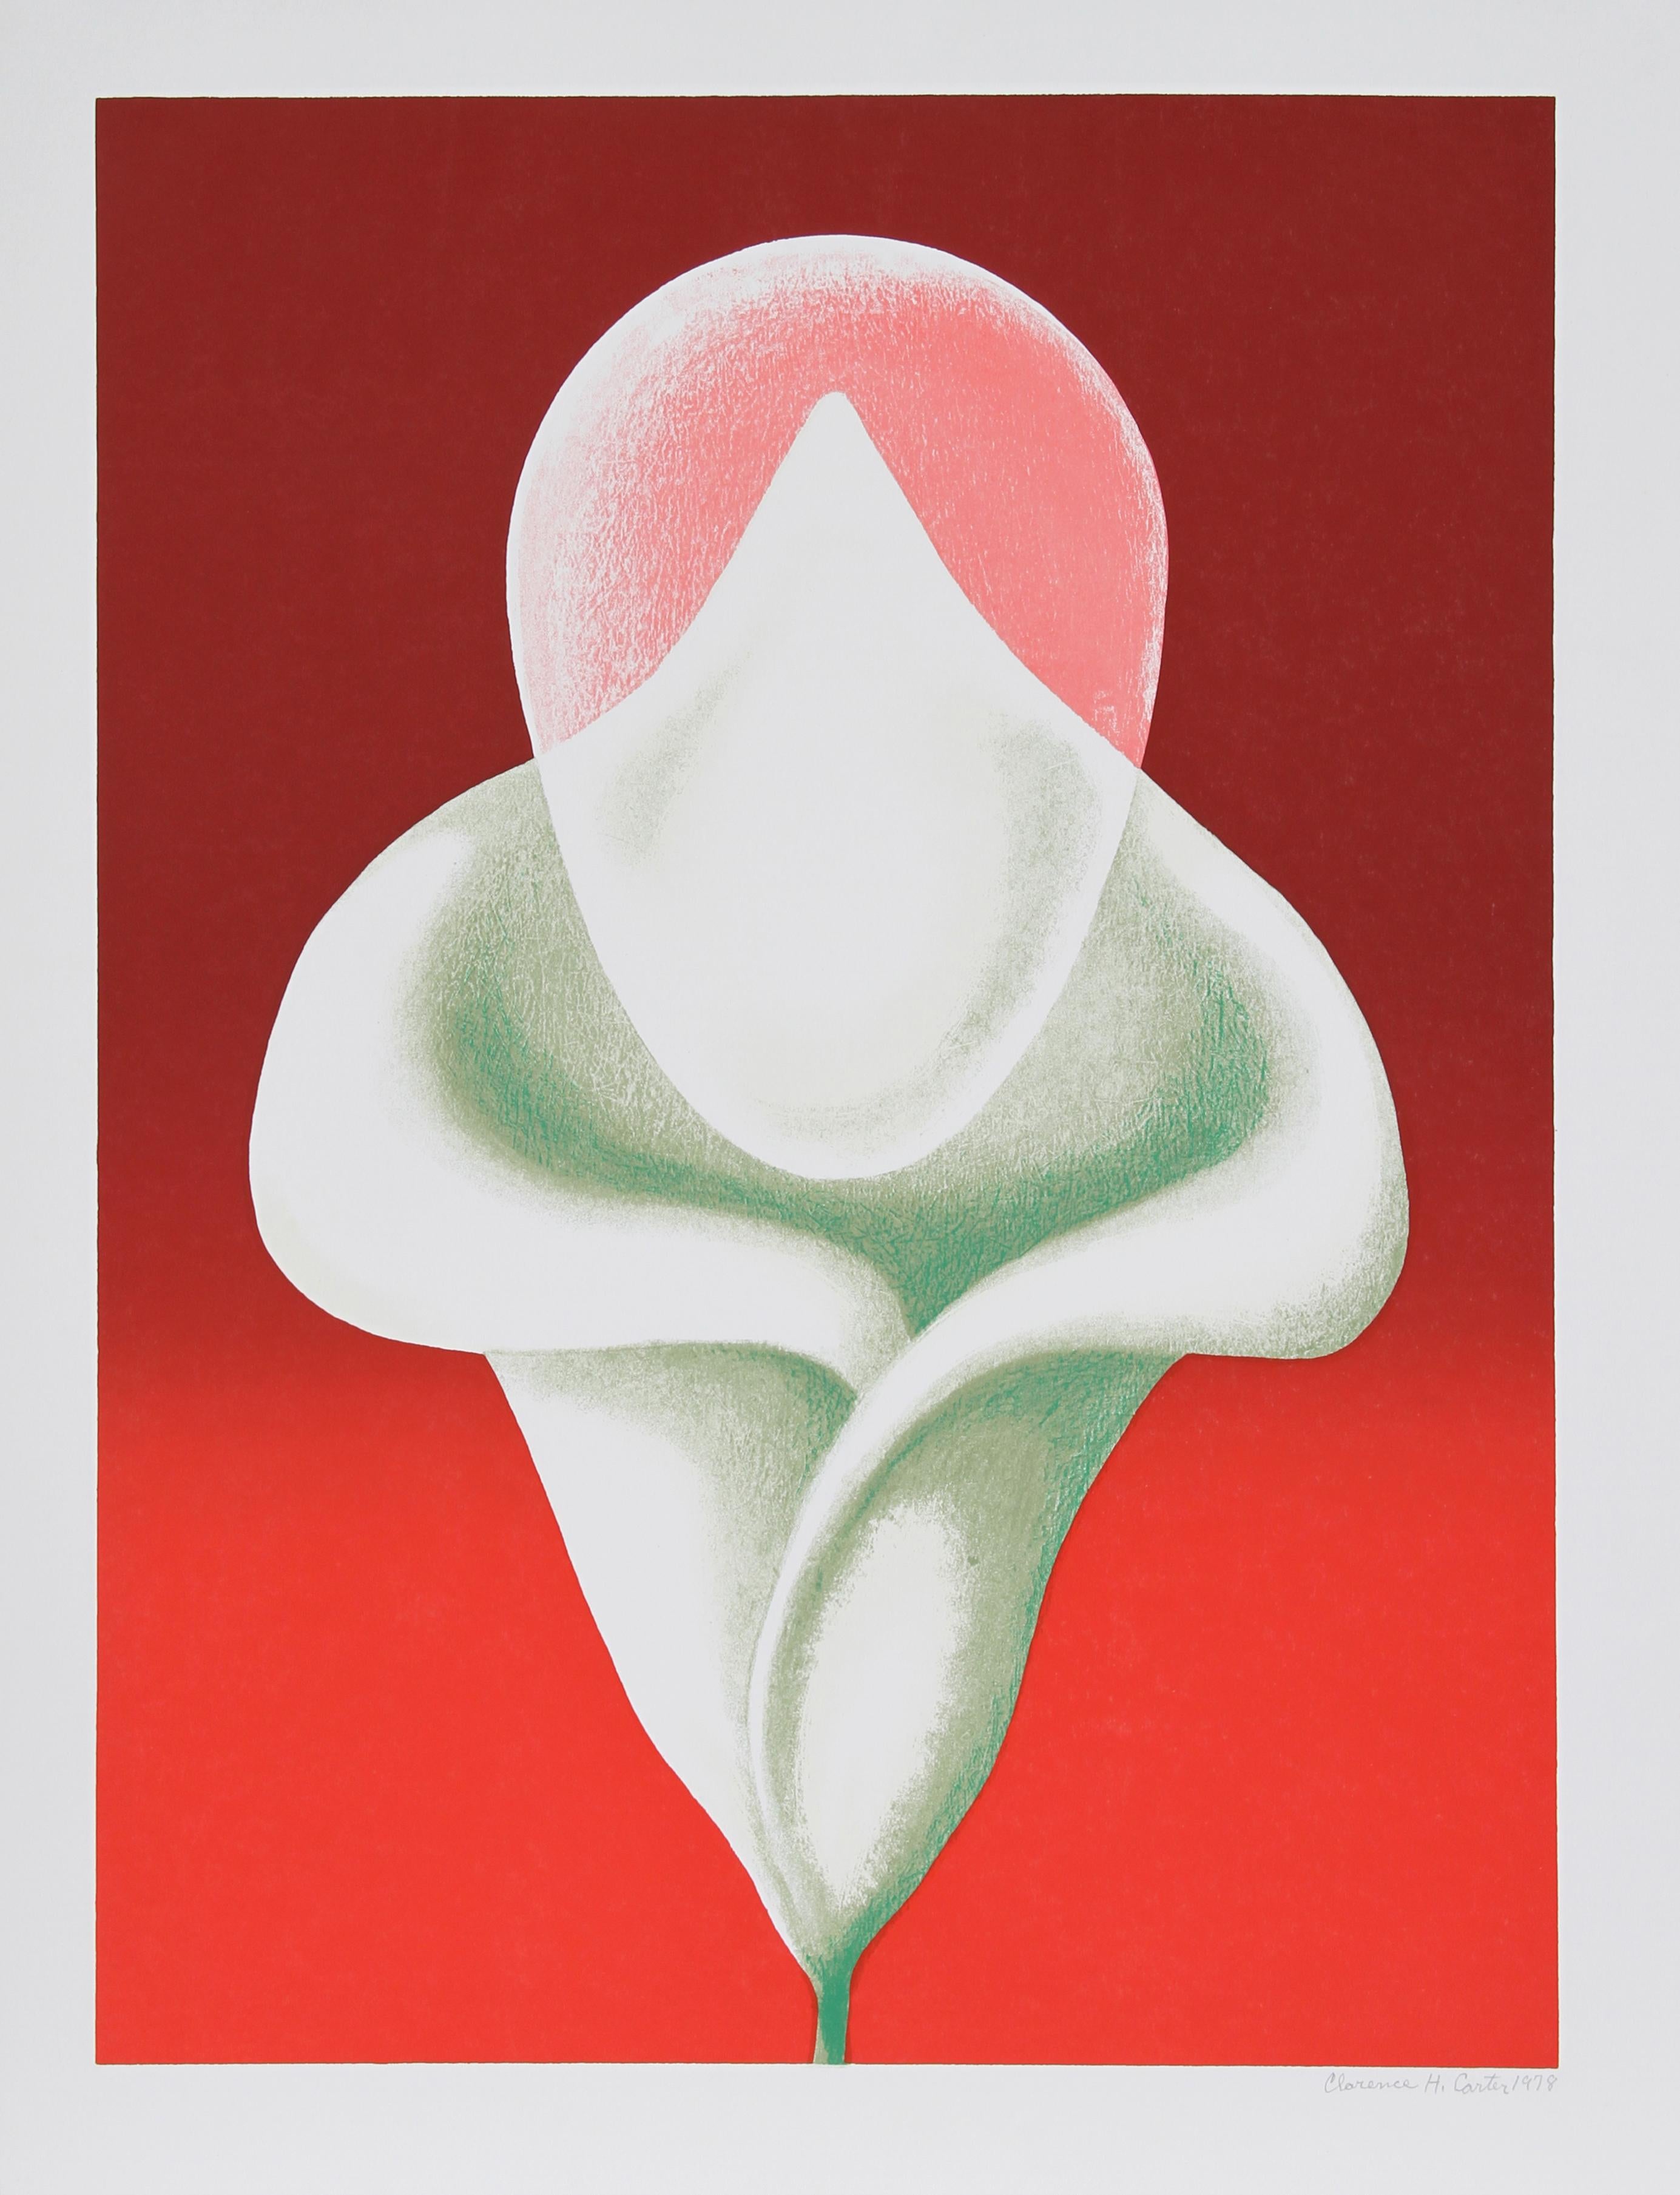 Künstler: Clarence Holbrook Carter, Amerikaner (1904 - 2000)
Titel: Abstrakte Tulpe
Jahr: 1979
Medium:	Serigraphie, signiert und nummeriert mit Bleistift
Auflage: 200
Papierformat: 35 x 26 Zoll (88,9 x 66,04 cm)
